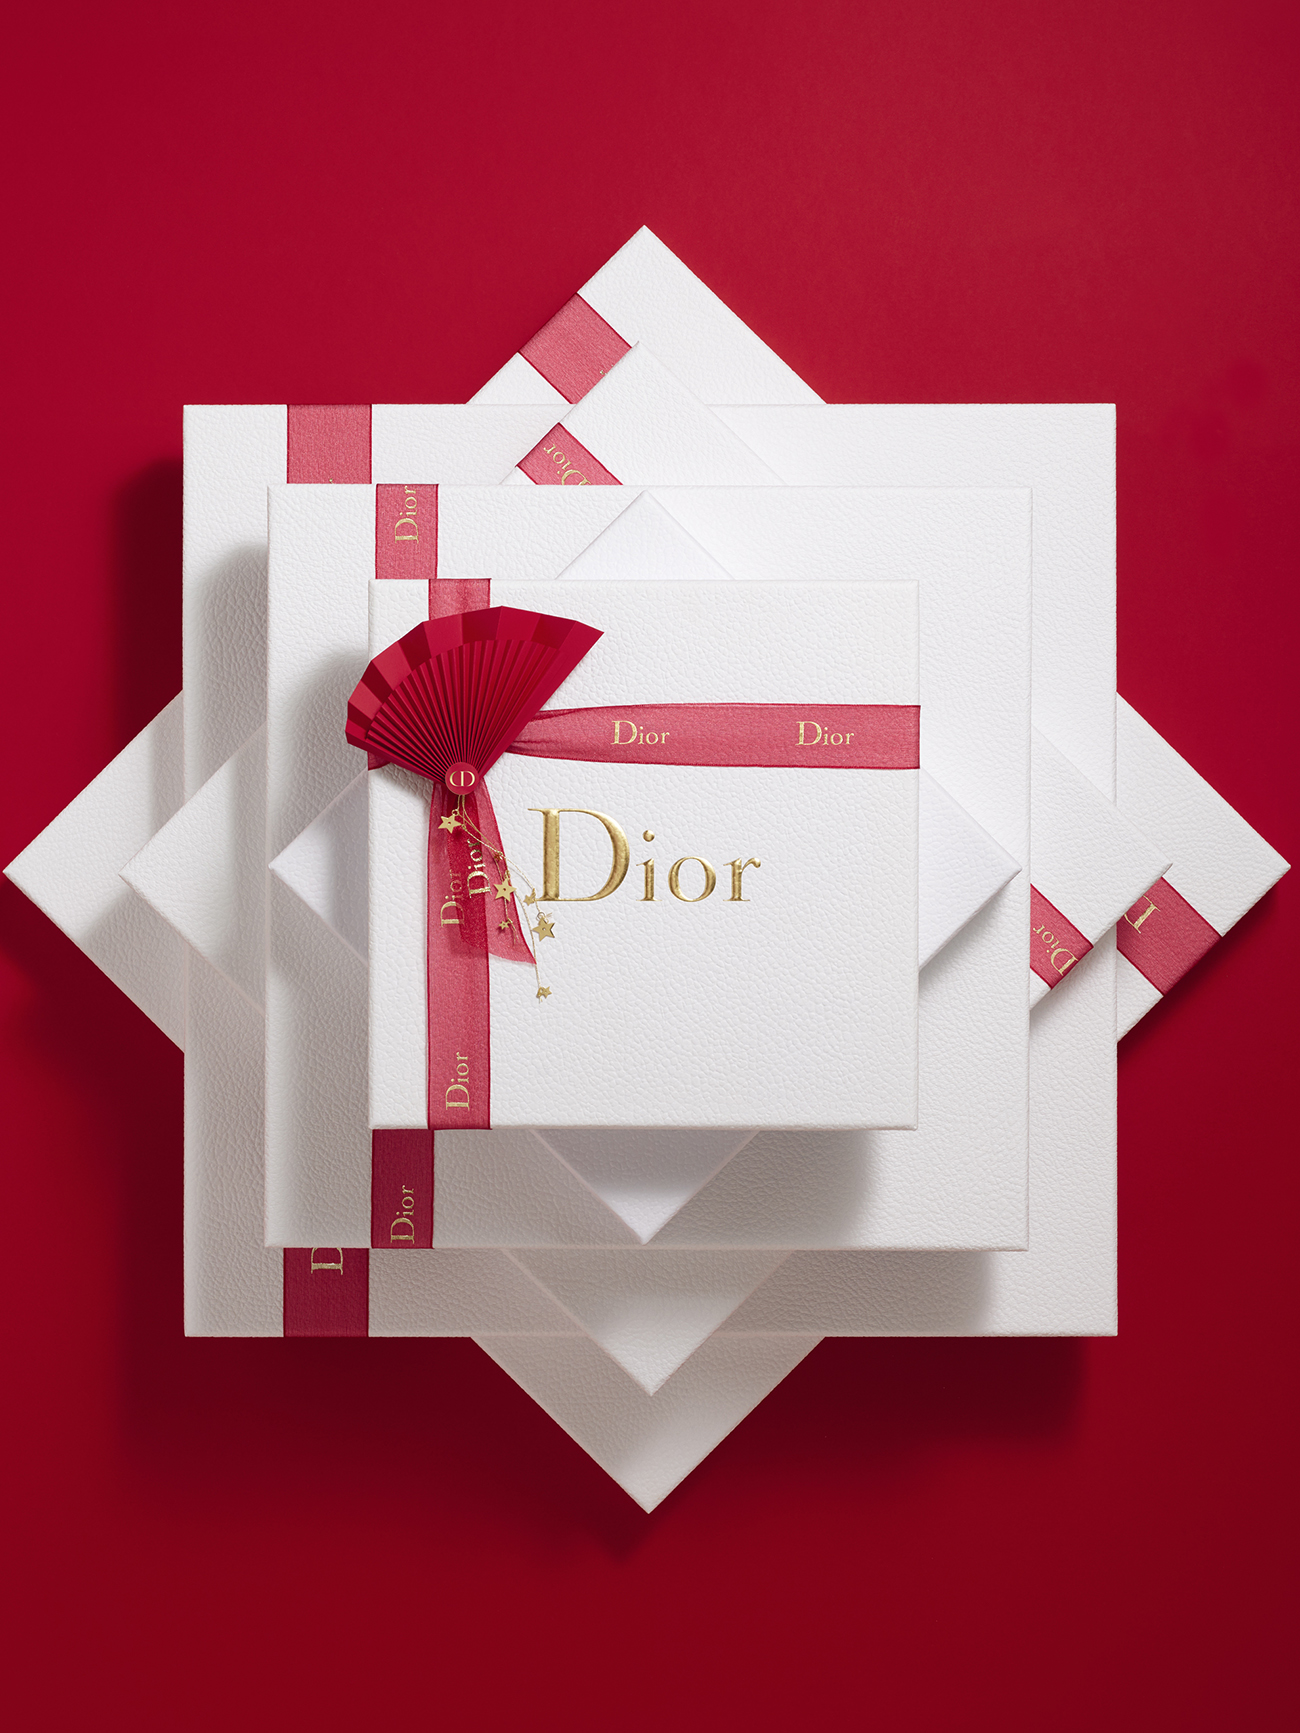 Dior studio design Maud Vantours set design paper art Paris